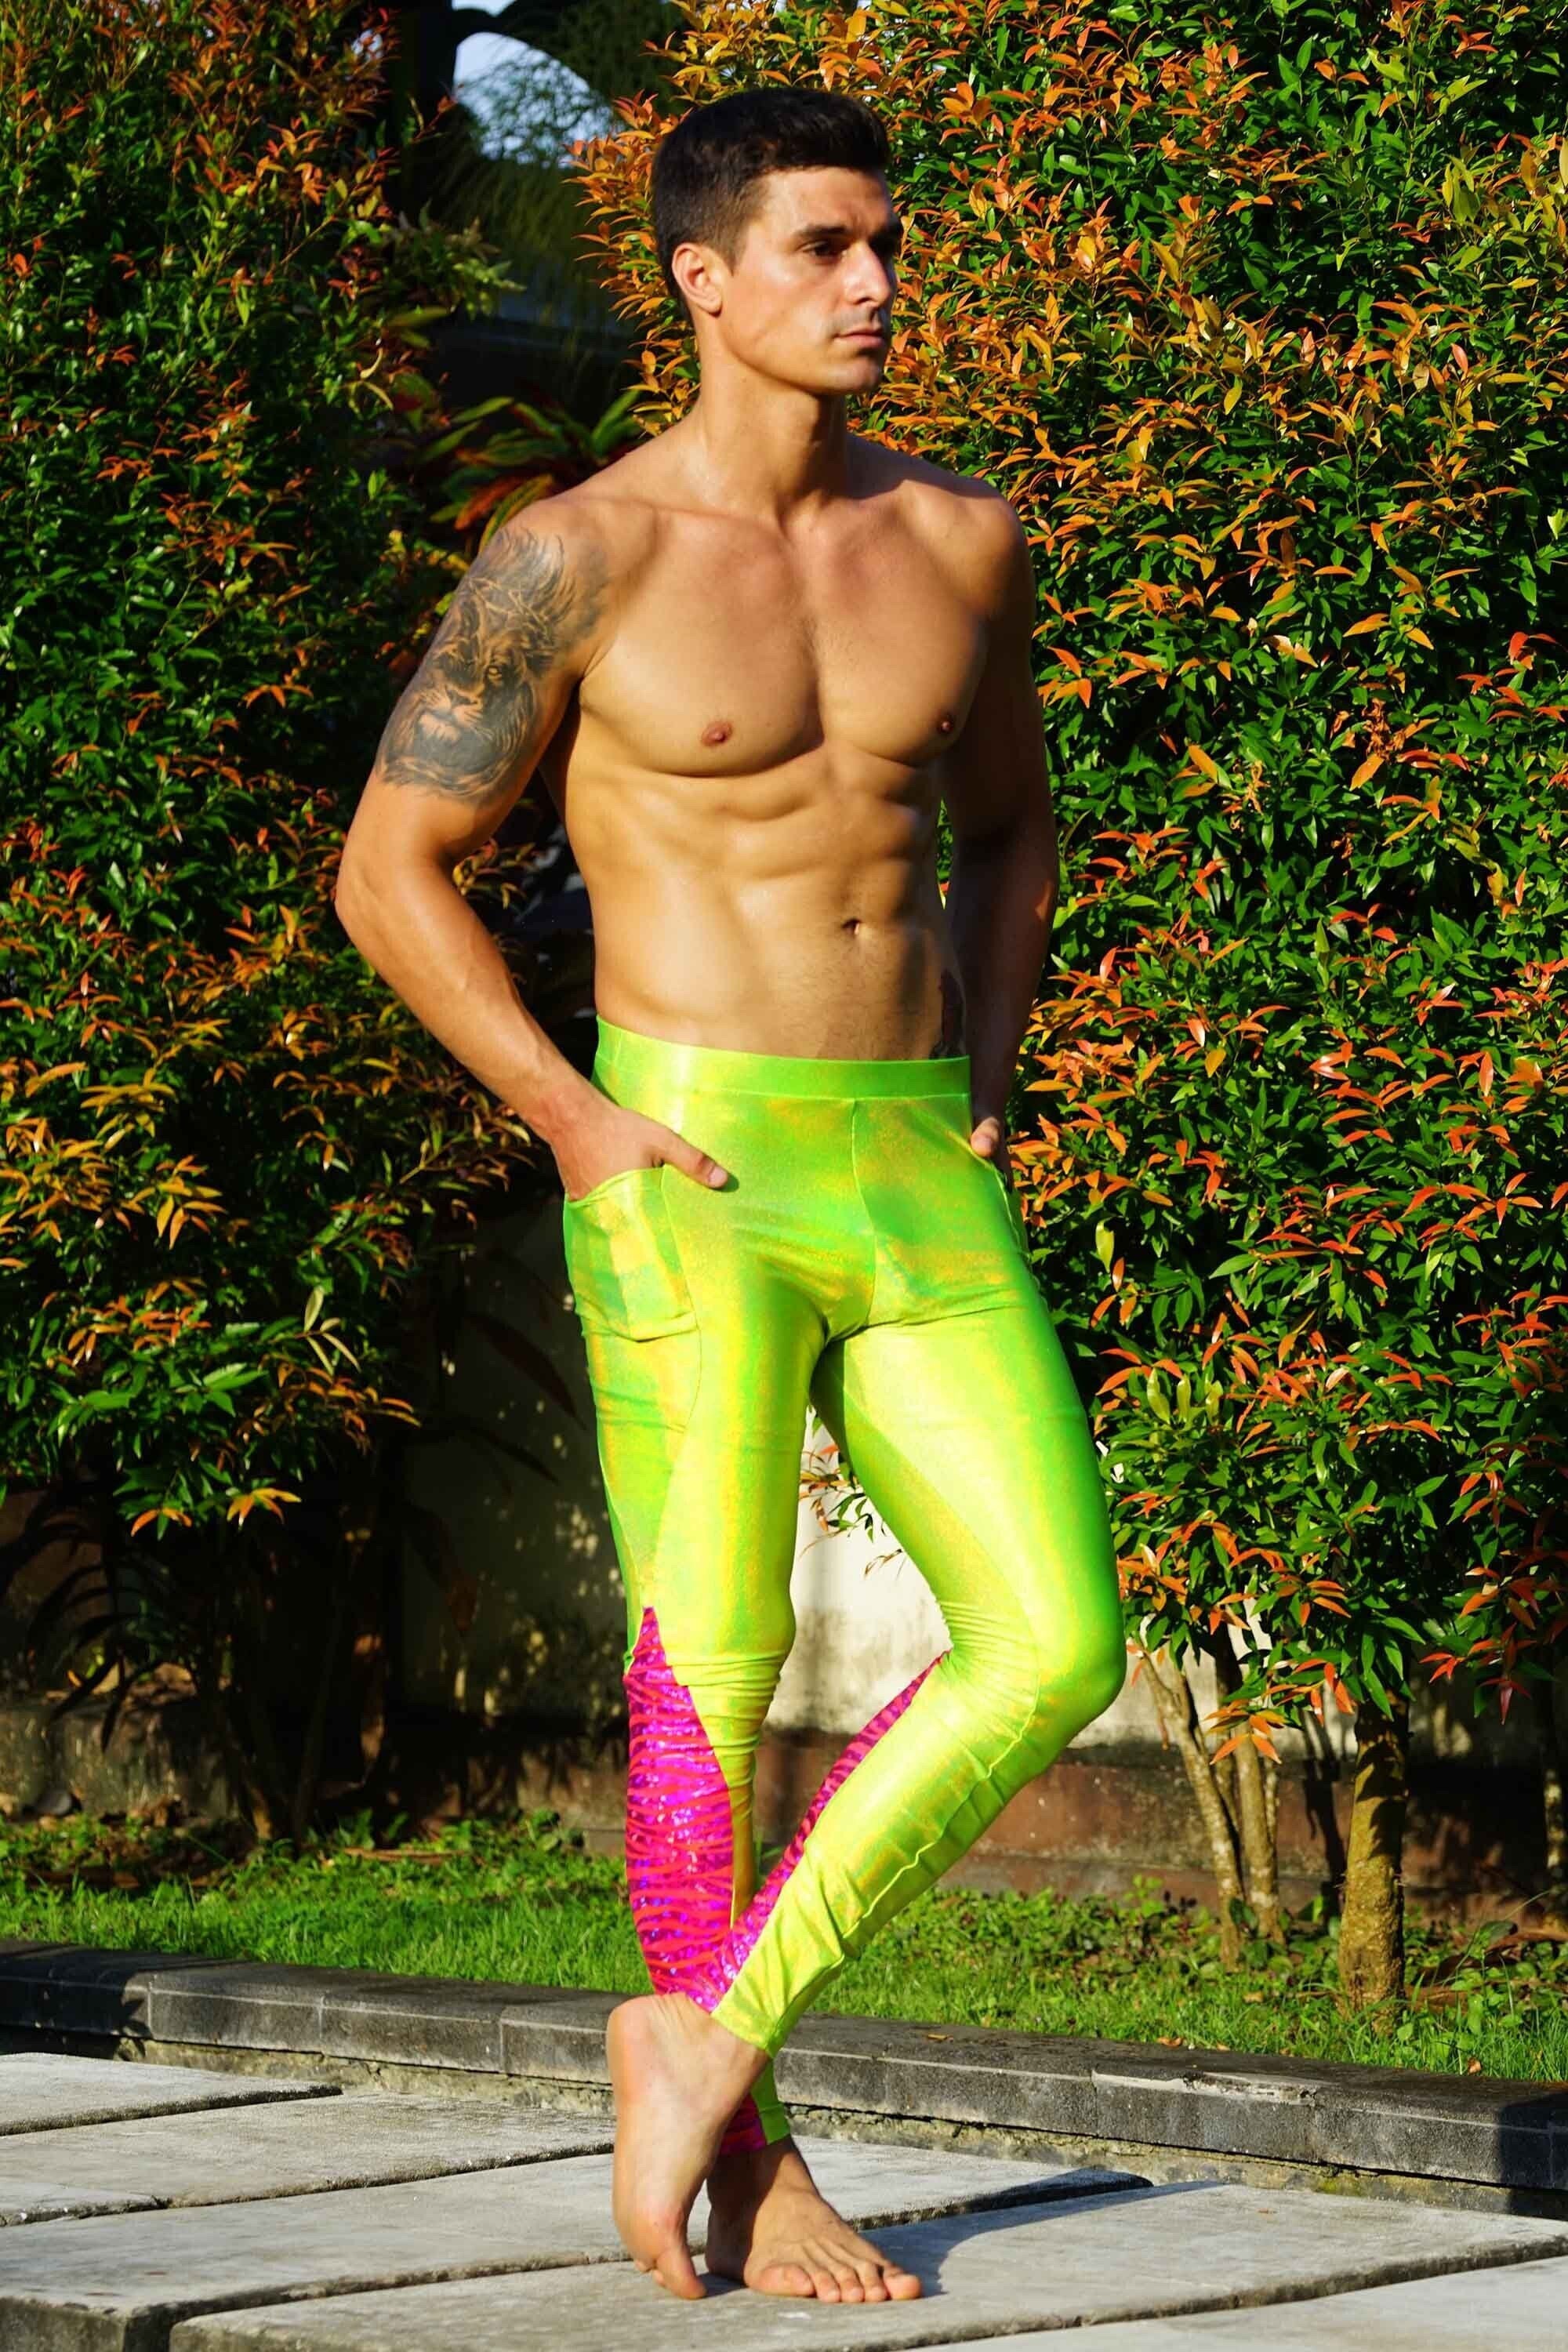 Neon Green Velvet Leggings